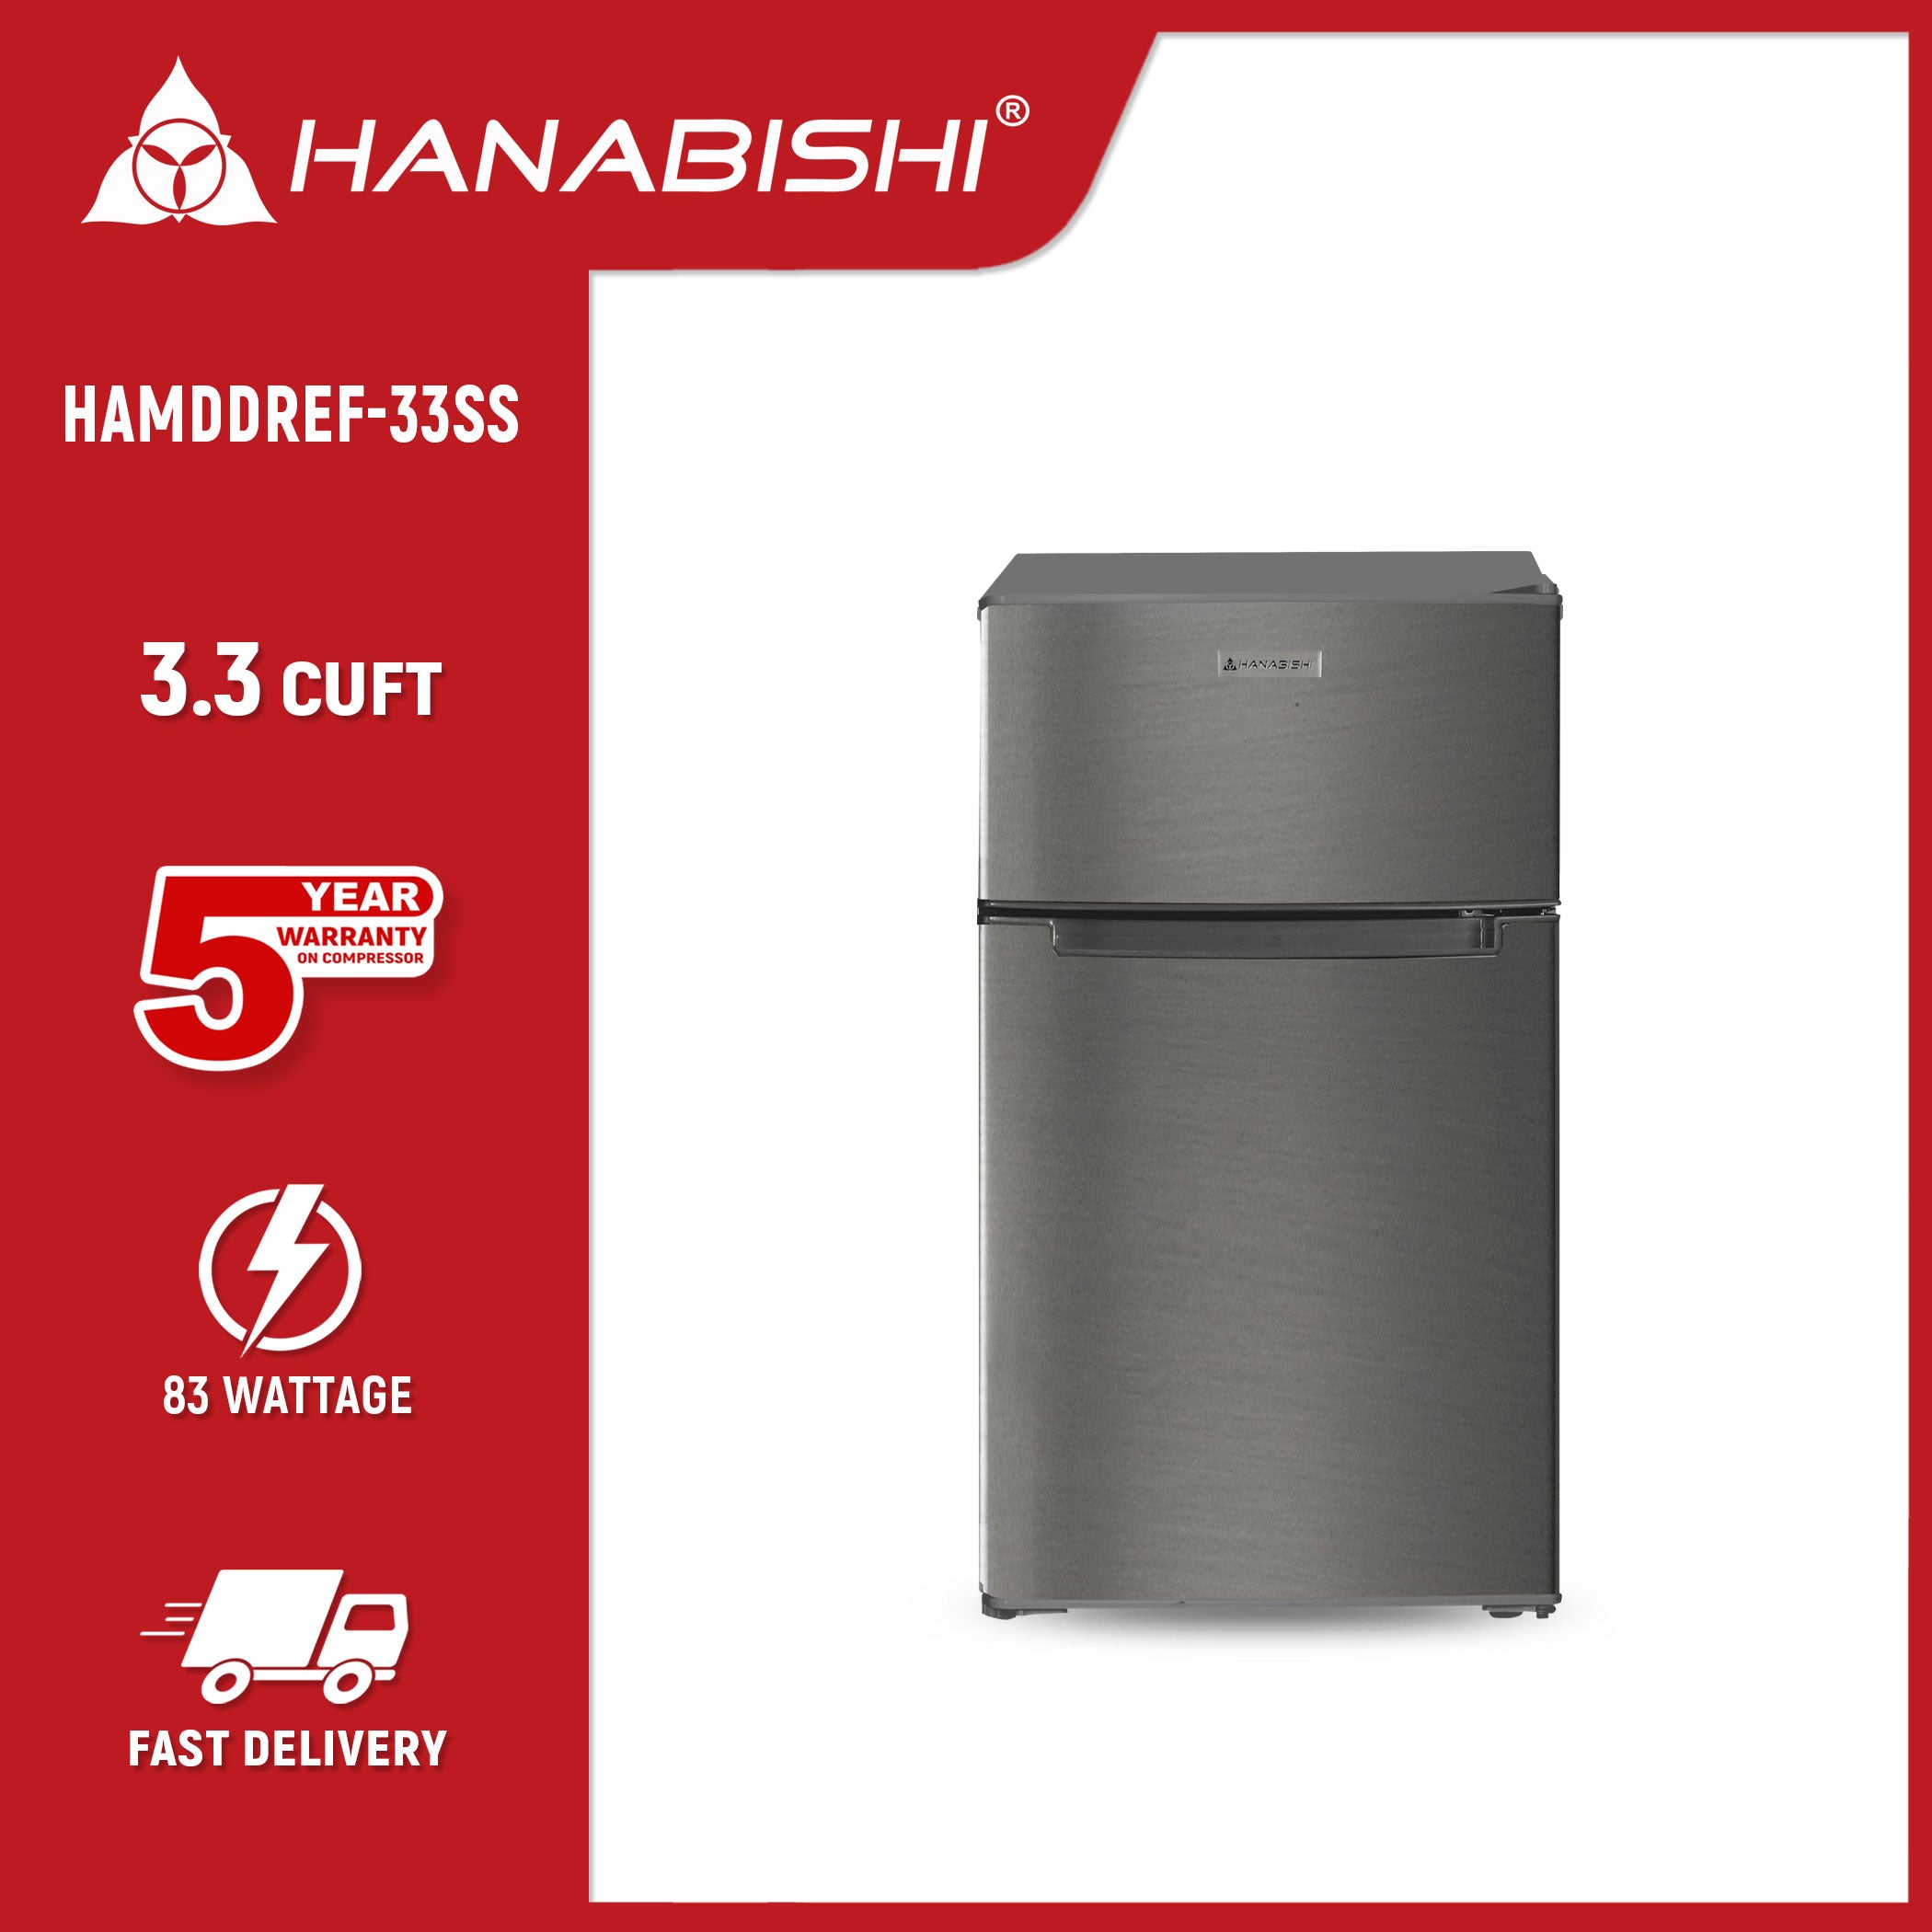 HANABISHI 3.3 cu.ft. Double Door Refrigerator HAMDDREF-33S Hanabishi